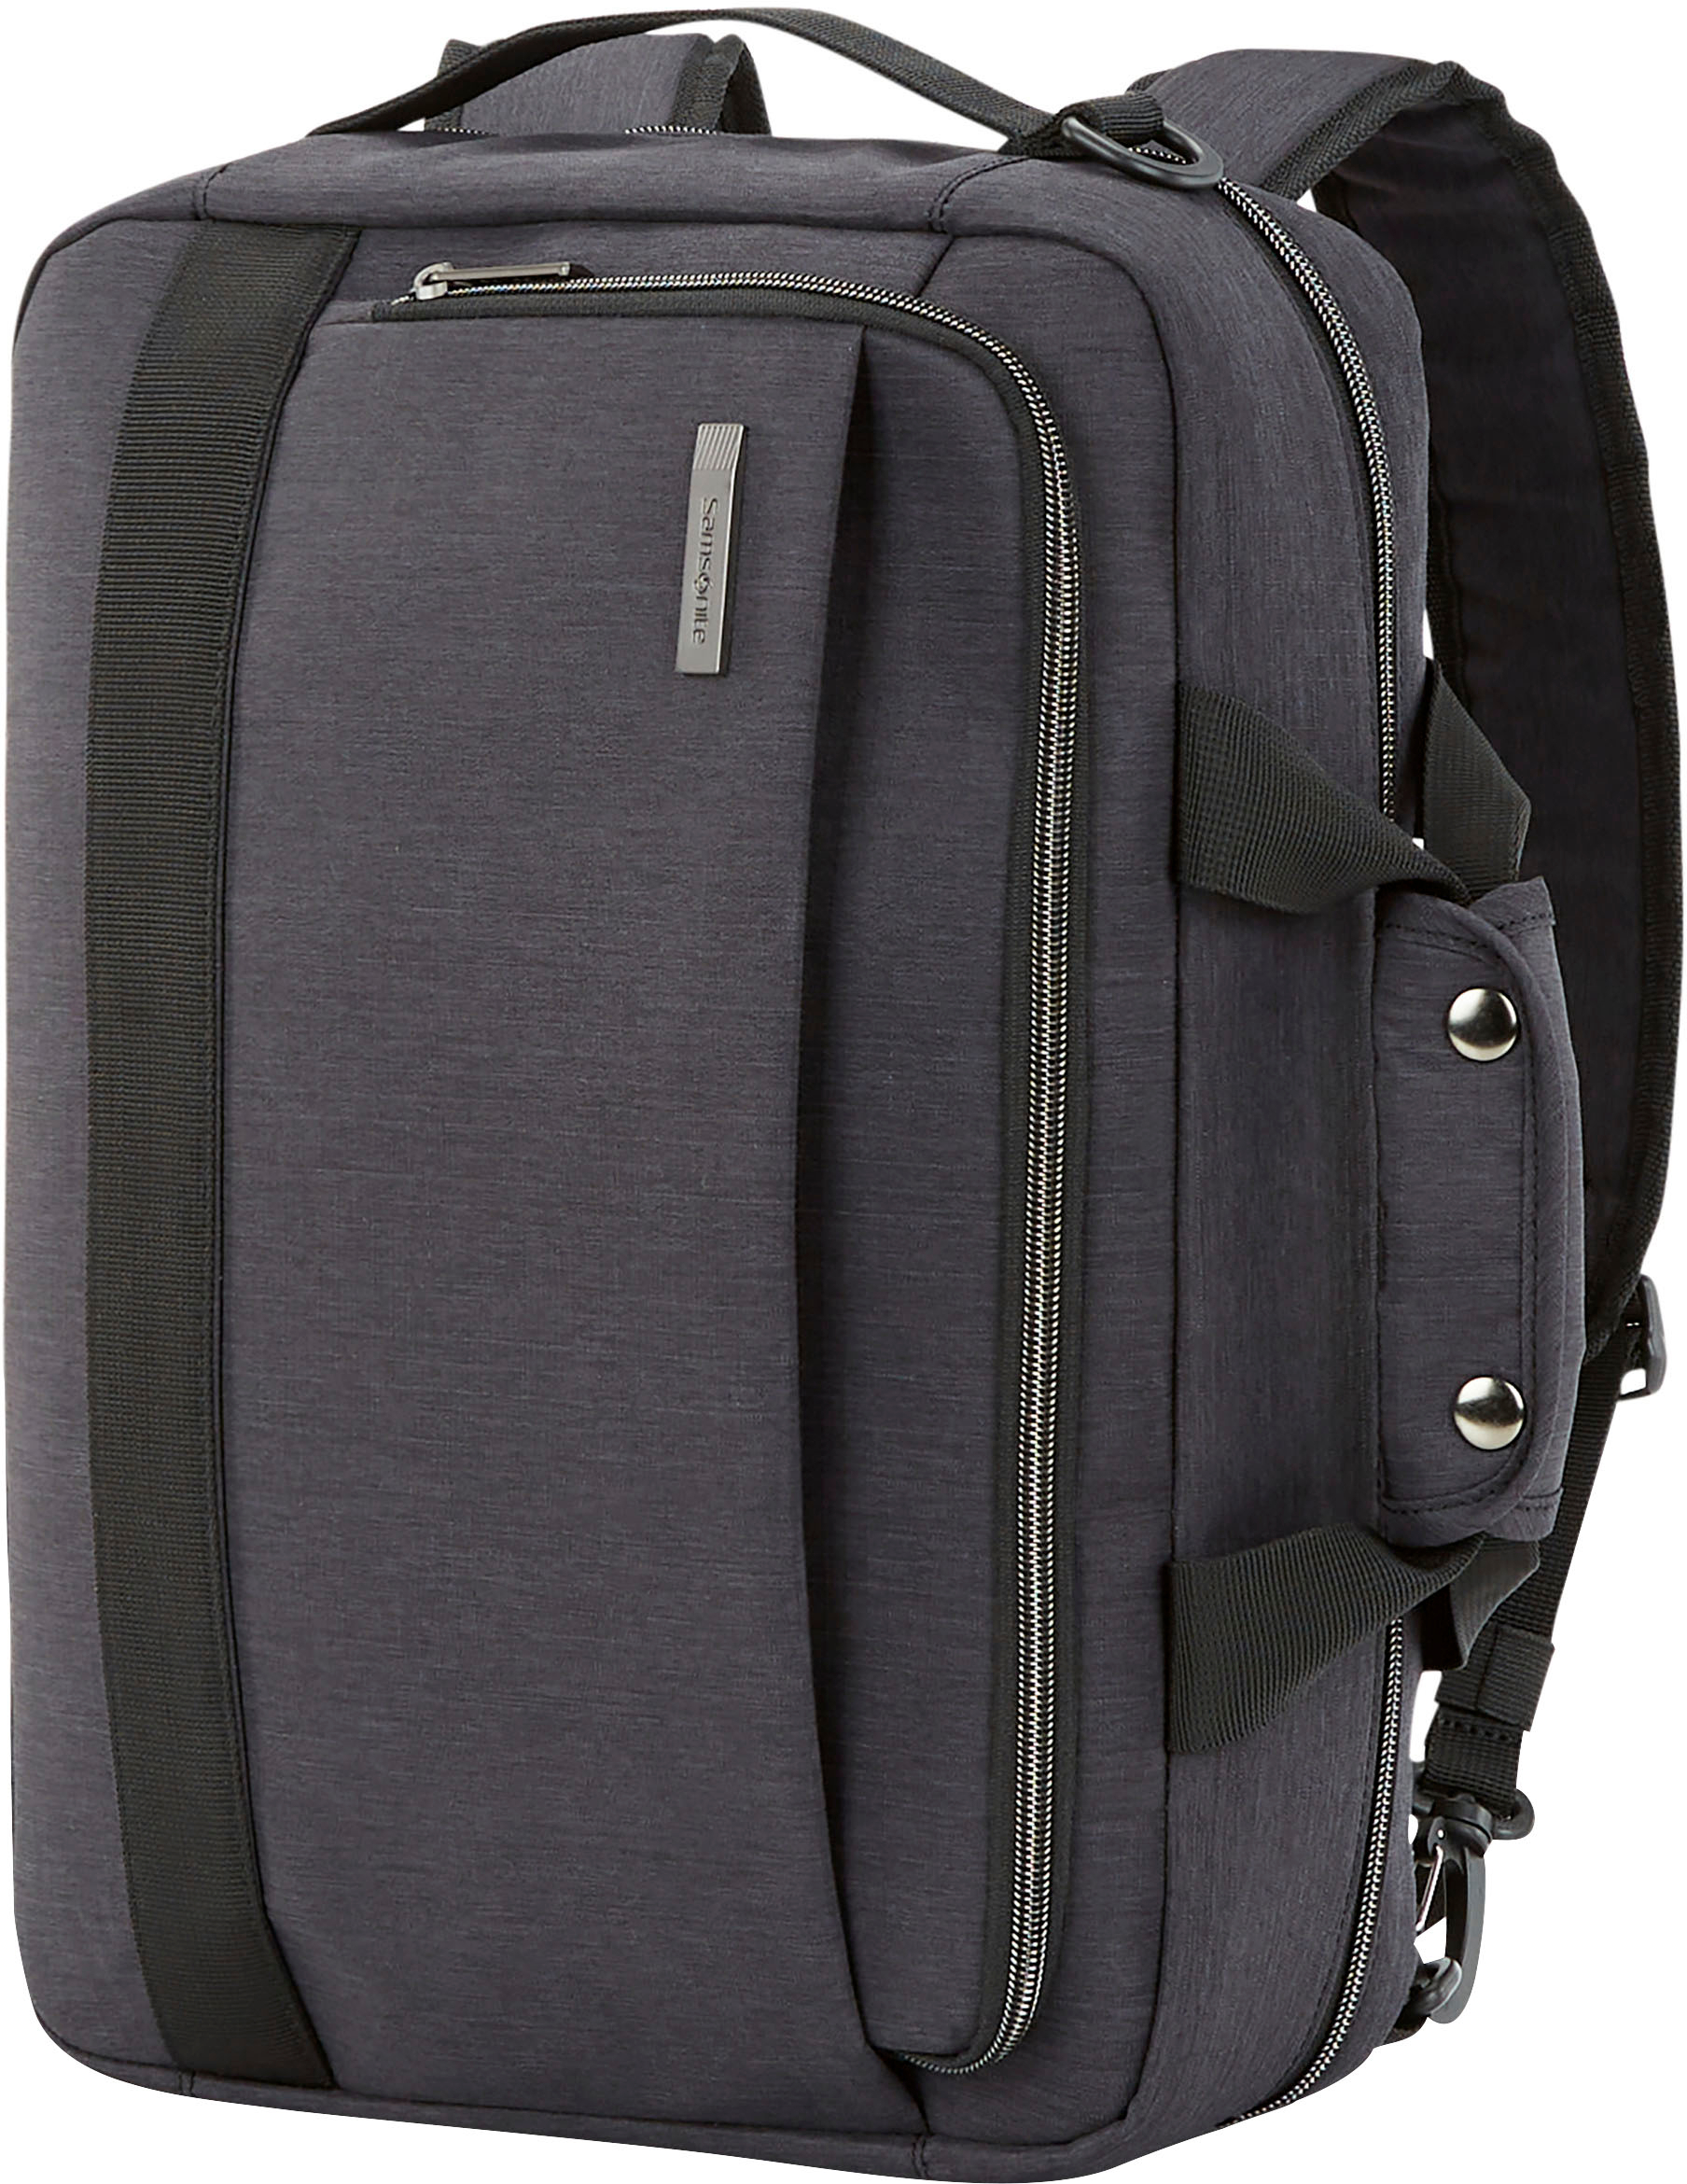 Angle View: Samsonite - Aramon NXT Laptop Shuttle Bag for 17" Laptop - Black